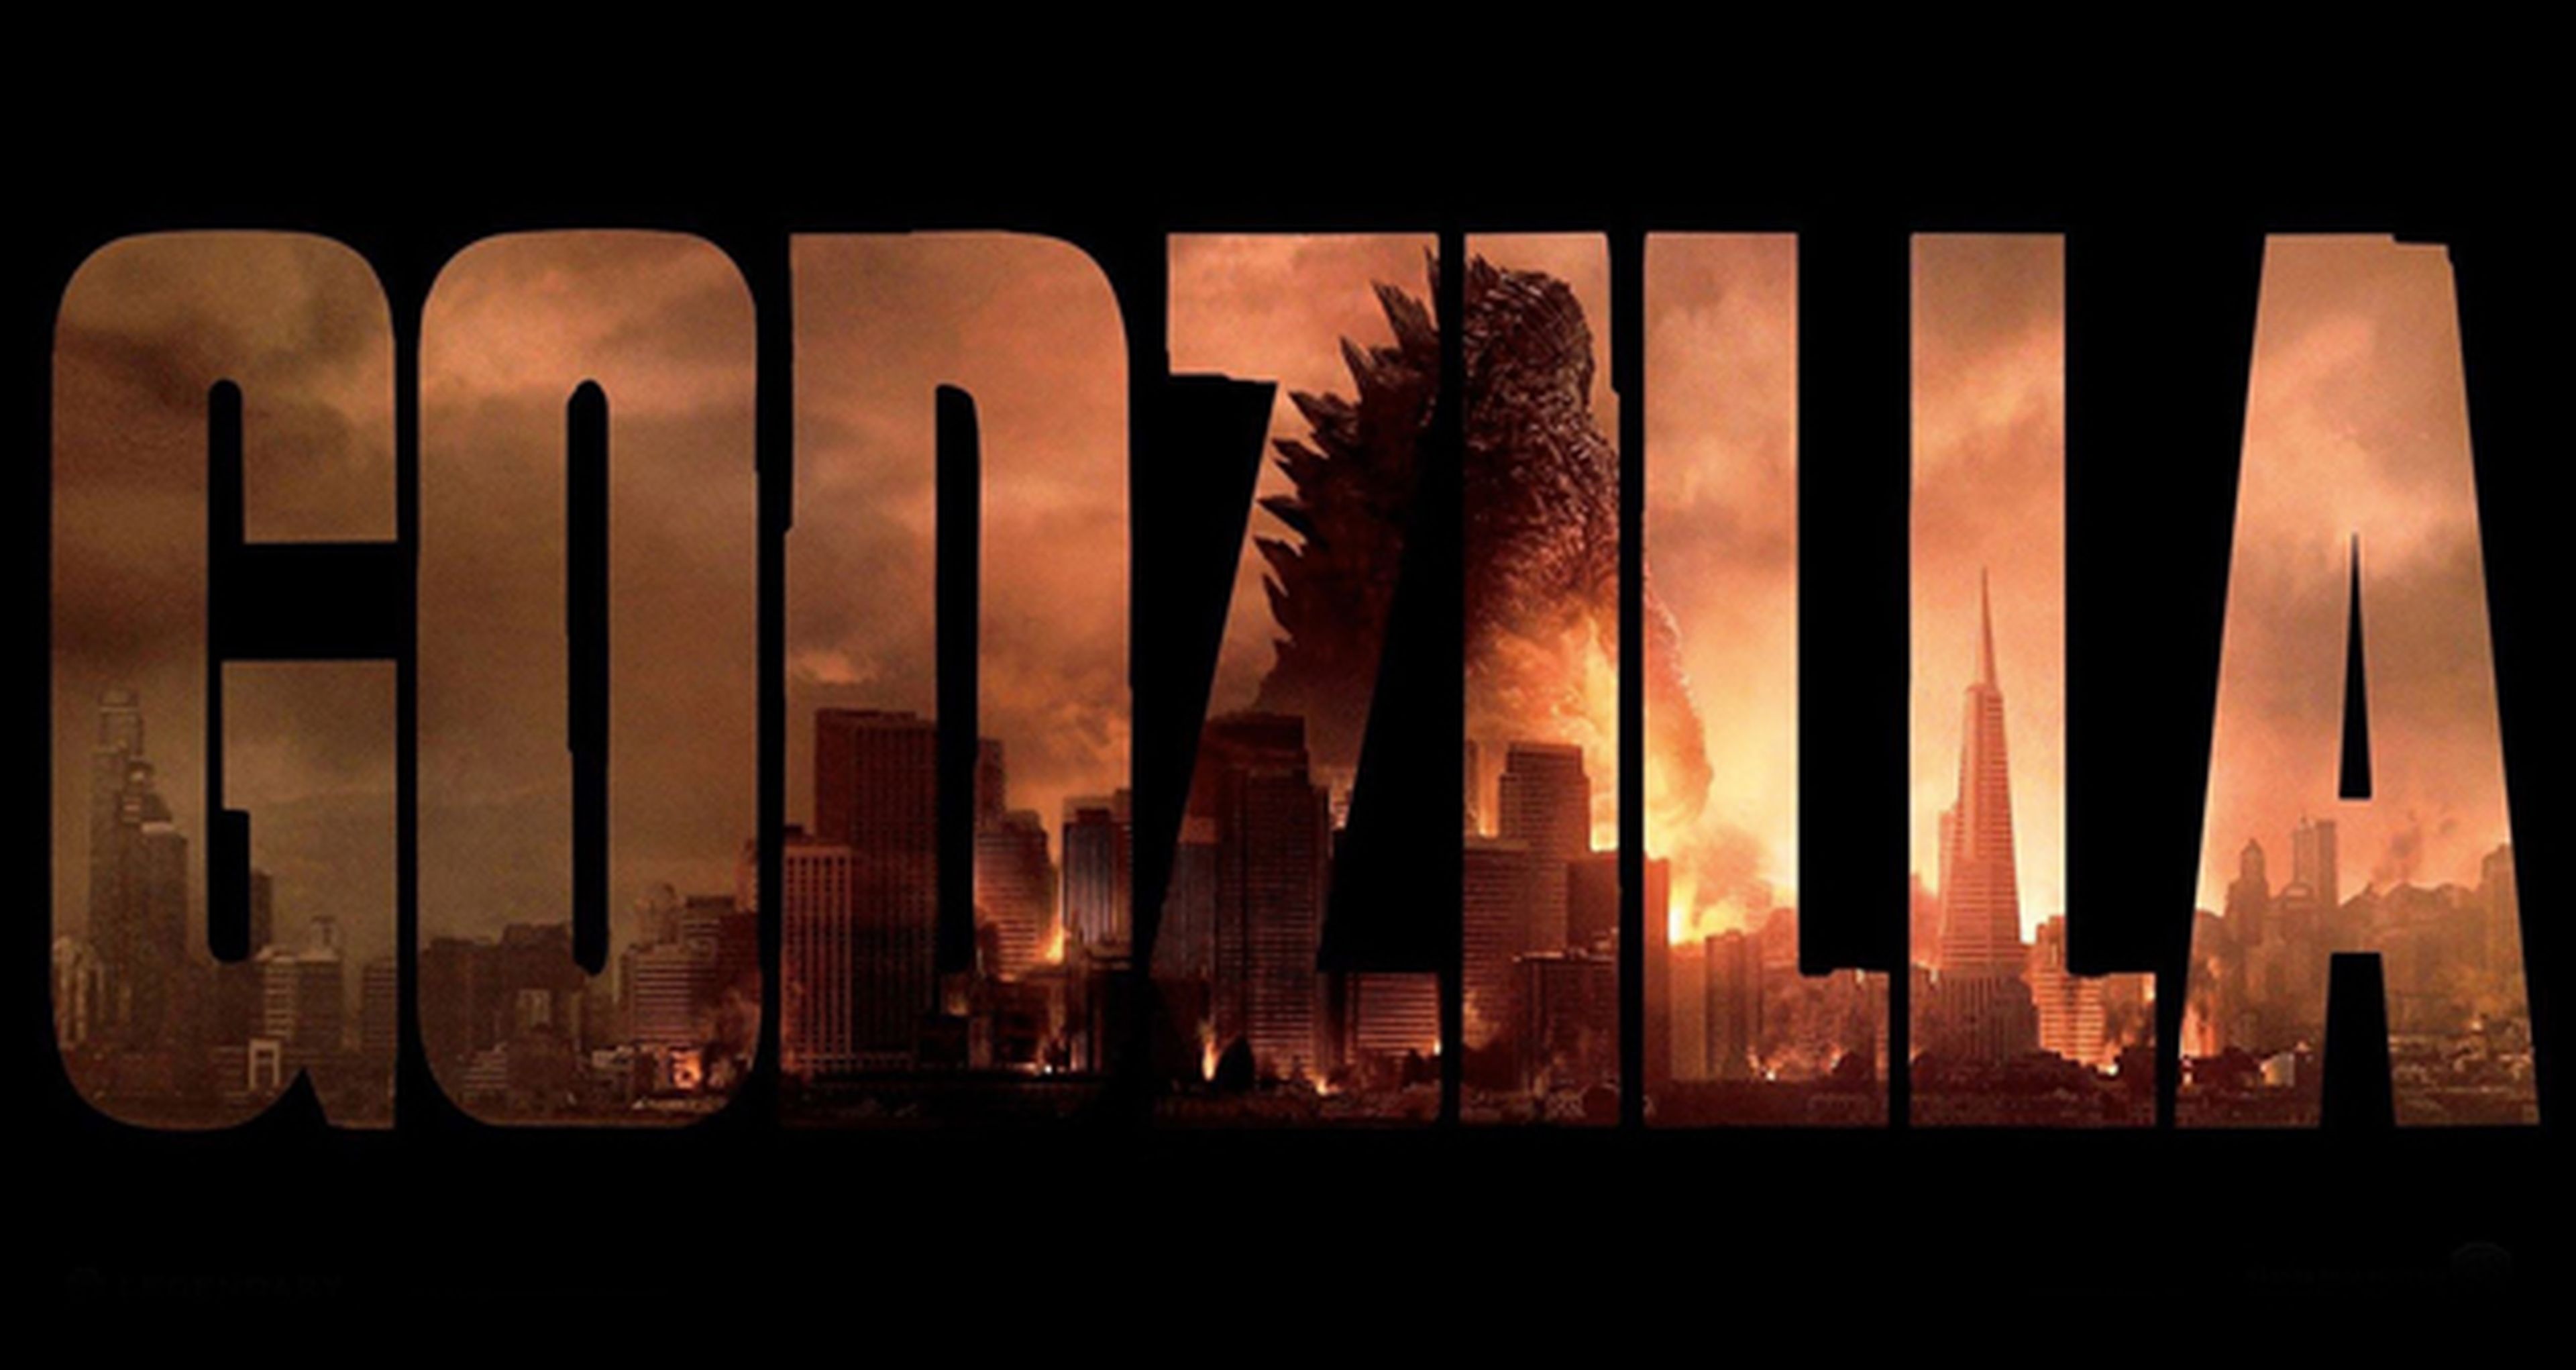 En marcha la secuela de Godzilla, ¡ha gustado la nueva versión!